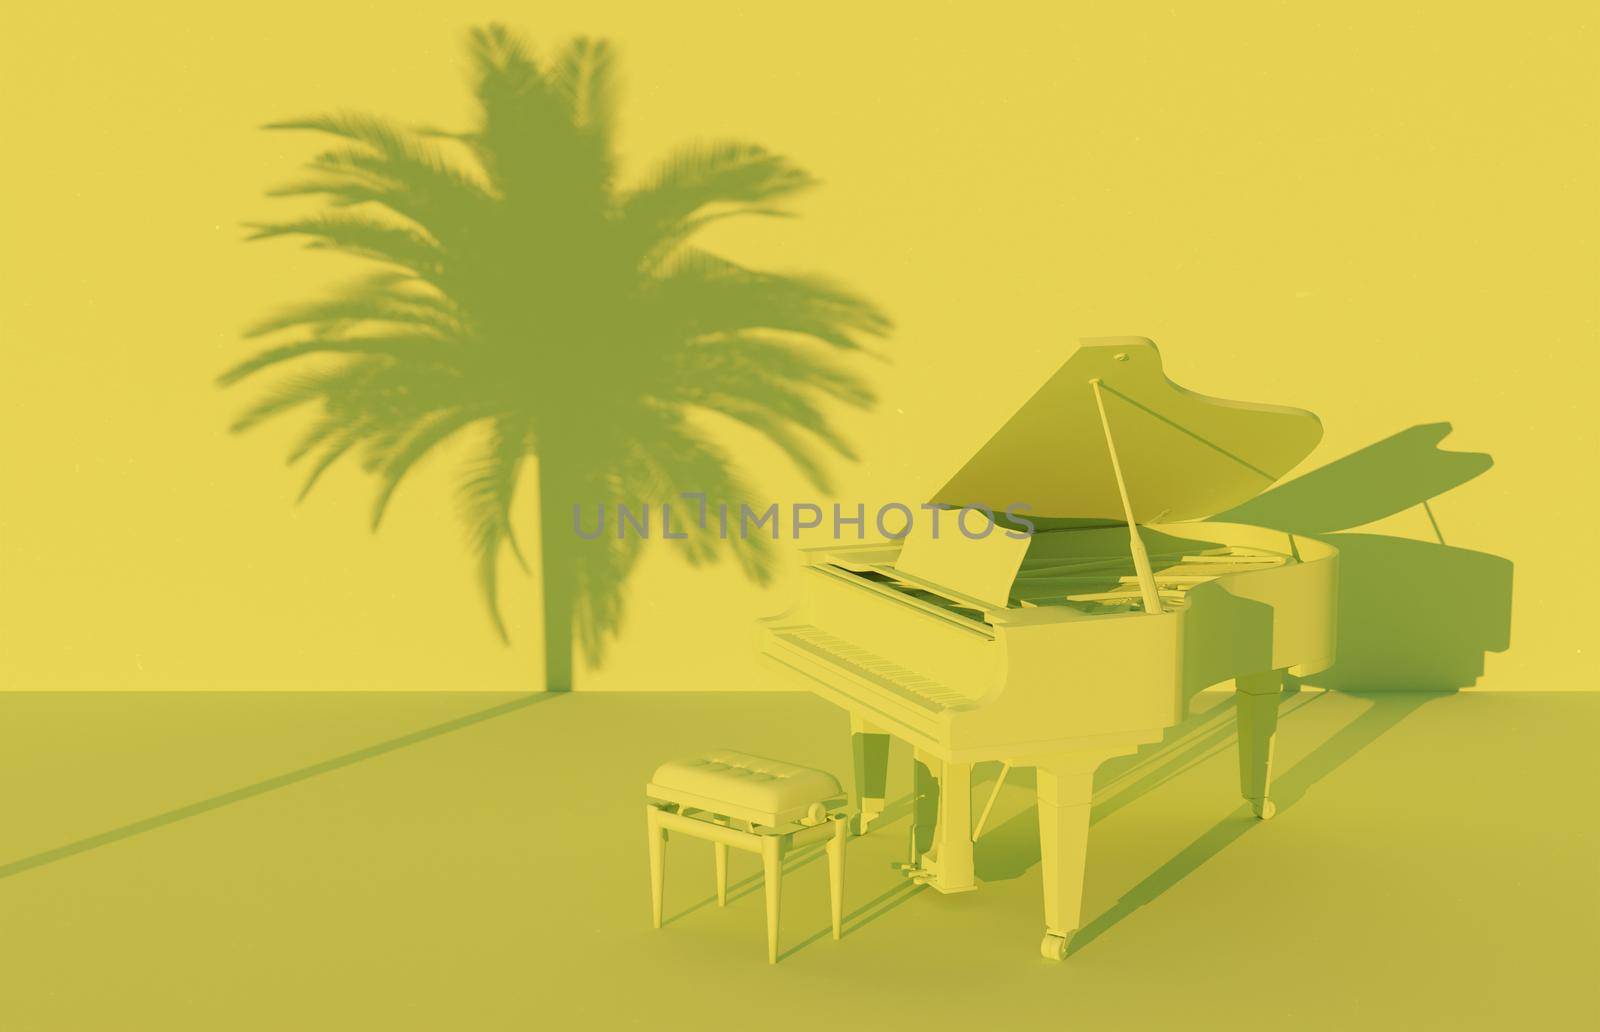 grand piano in monochromatic scenery by asolano